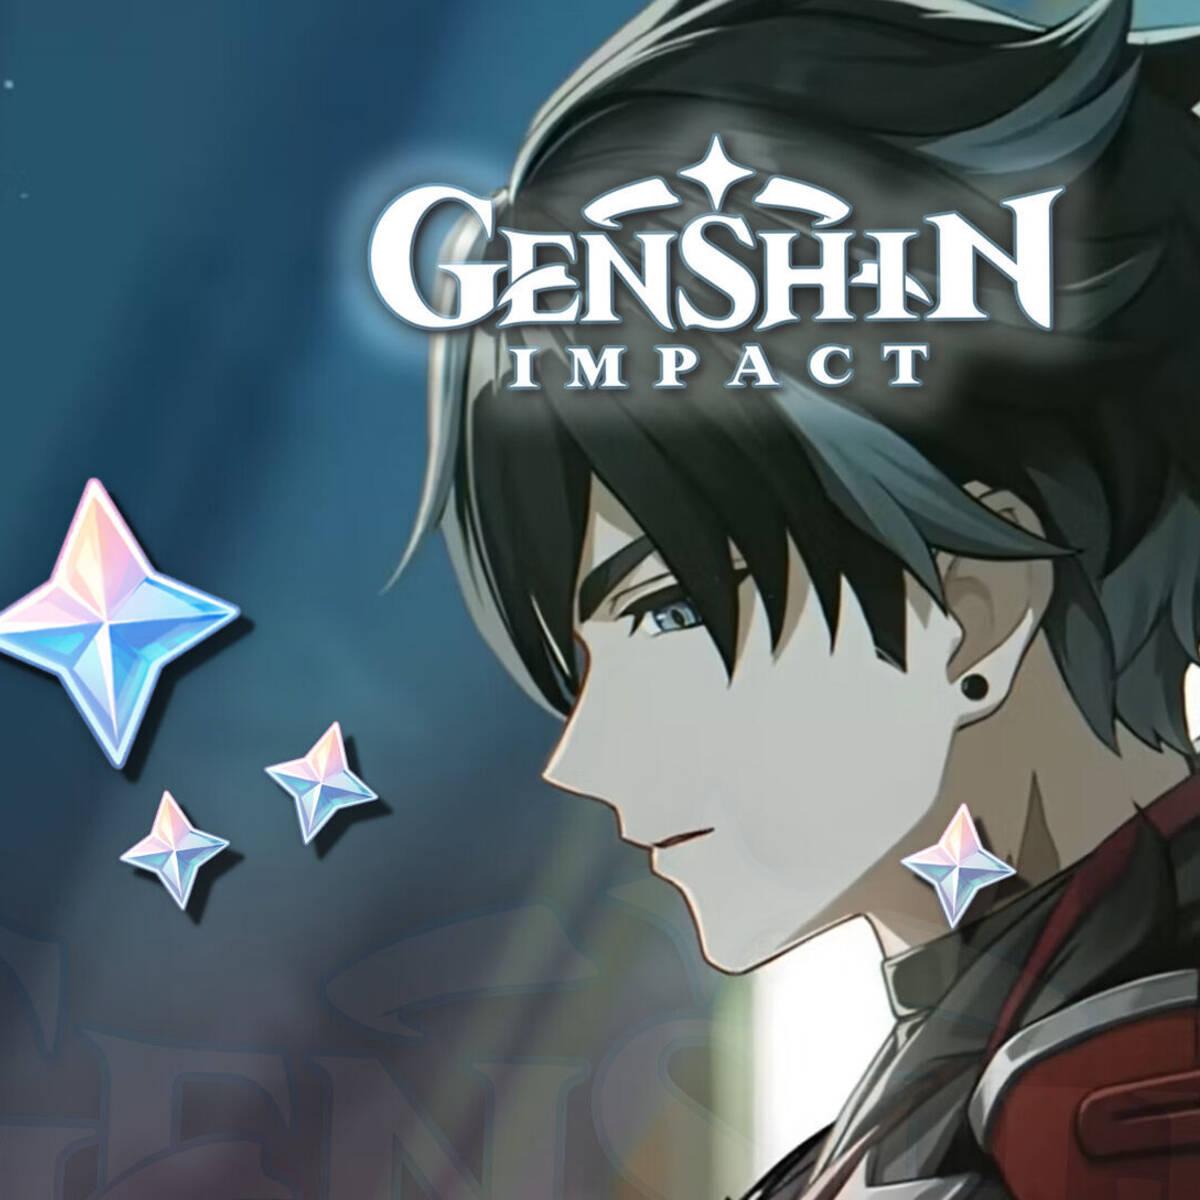 Genshin Impact regala Protogemas gratis con tres nuevos códigos, pero  durarán muy poco tiempo - Genshin Impact - 3DJuegos